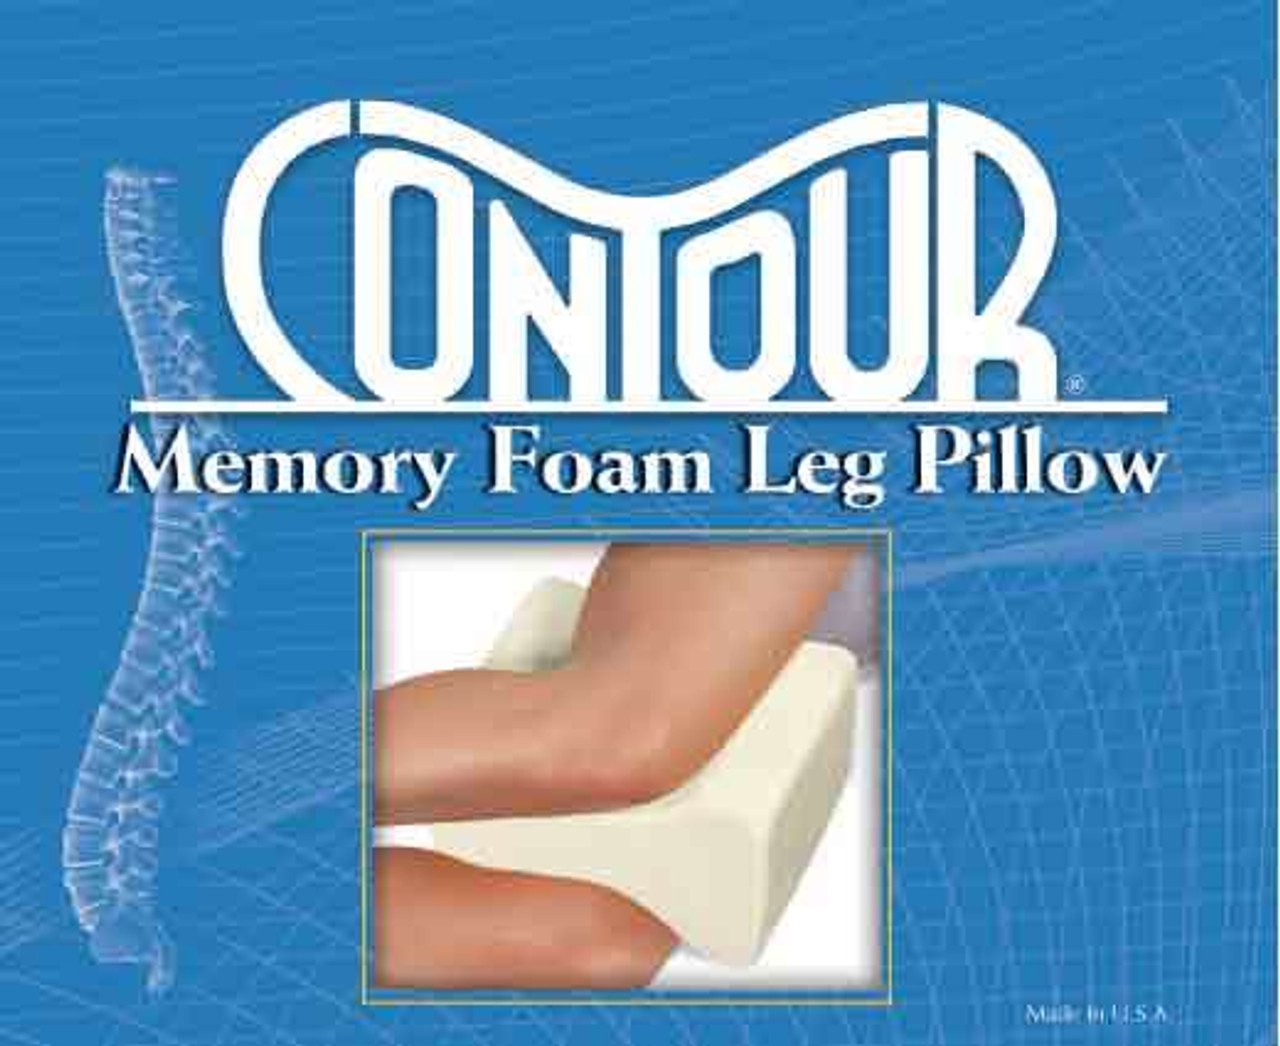 Contour Memory Foam Leg Pillow